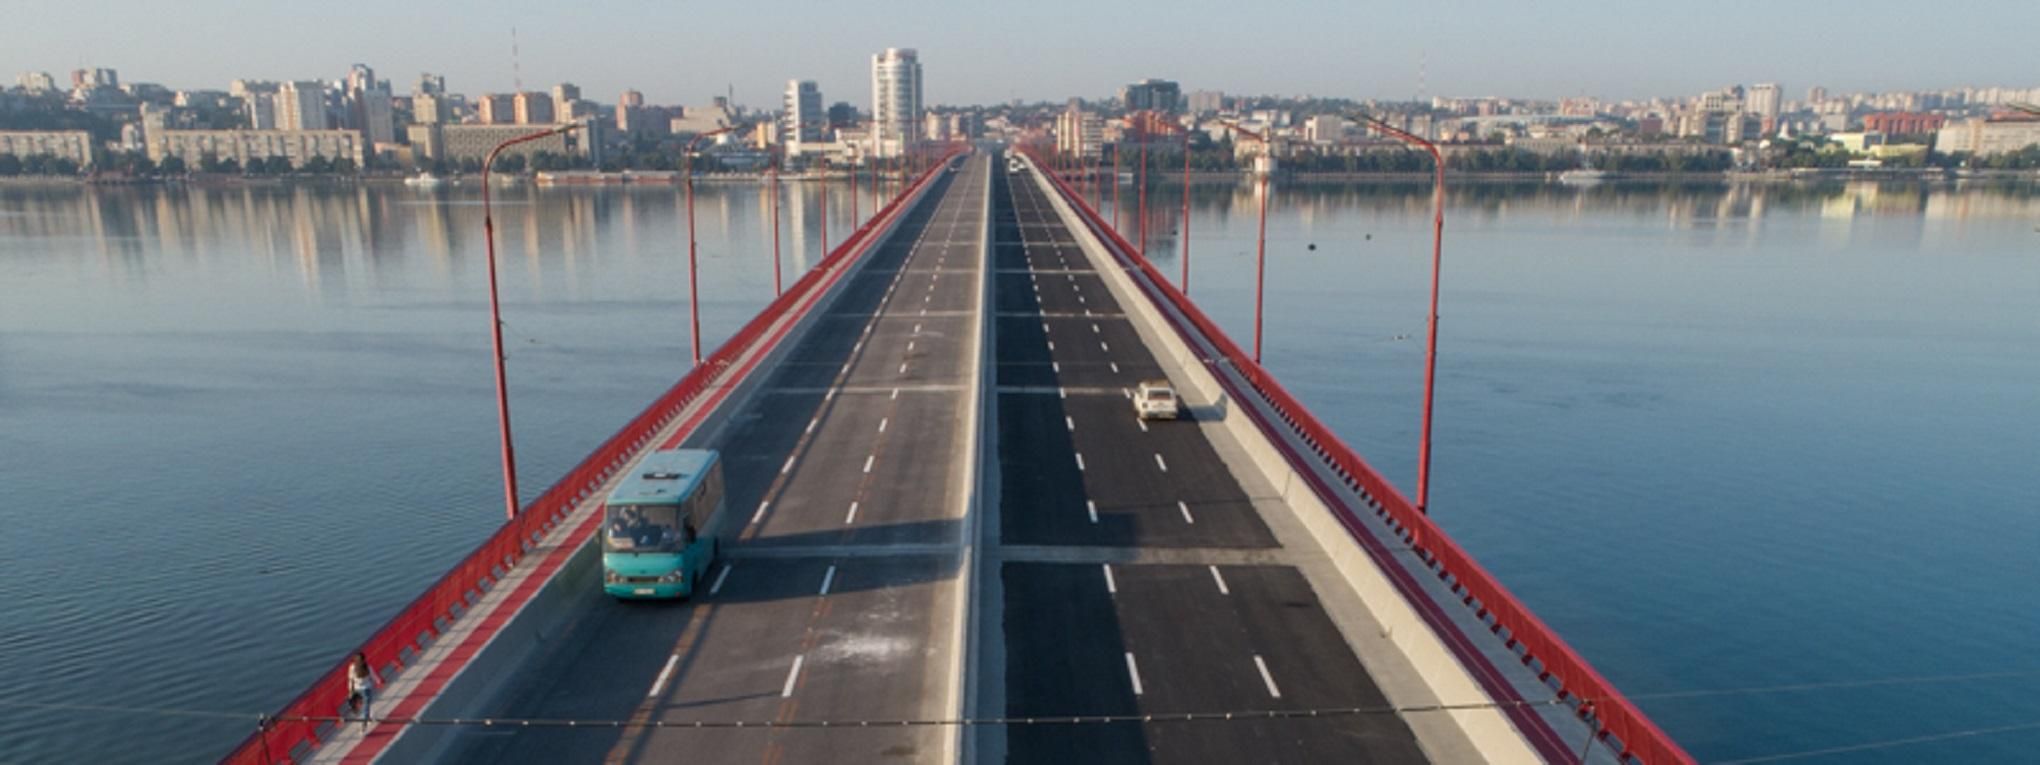 Скандал вокруг Центрального моста Днепра: заместителя Филатова объявили в розыск